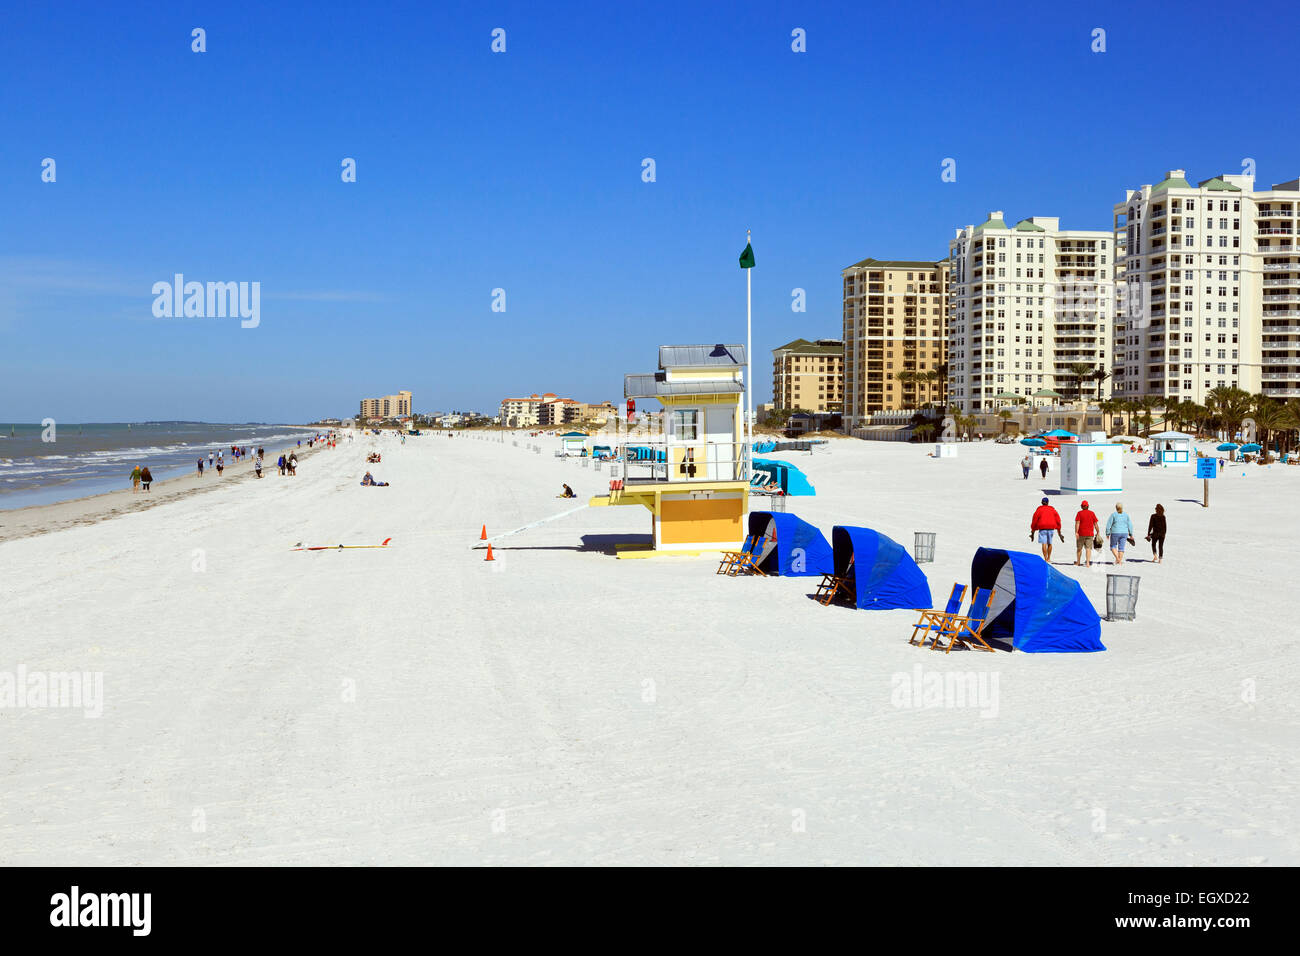 Plage de Clearwater, en Floride, l'Amérique, avec hôtels et condominiums Banque D'Images